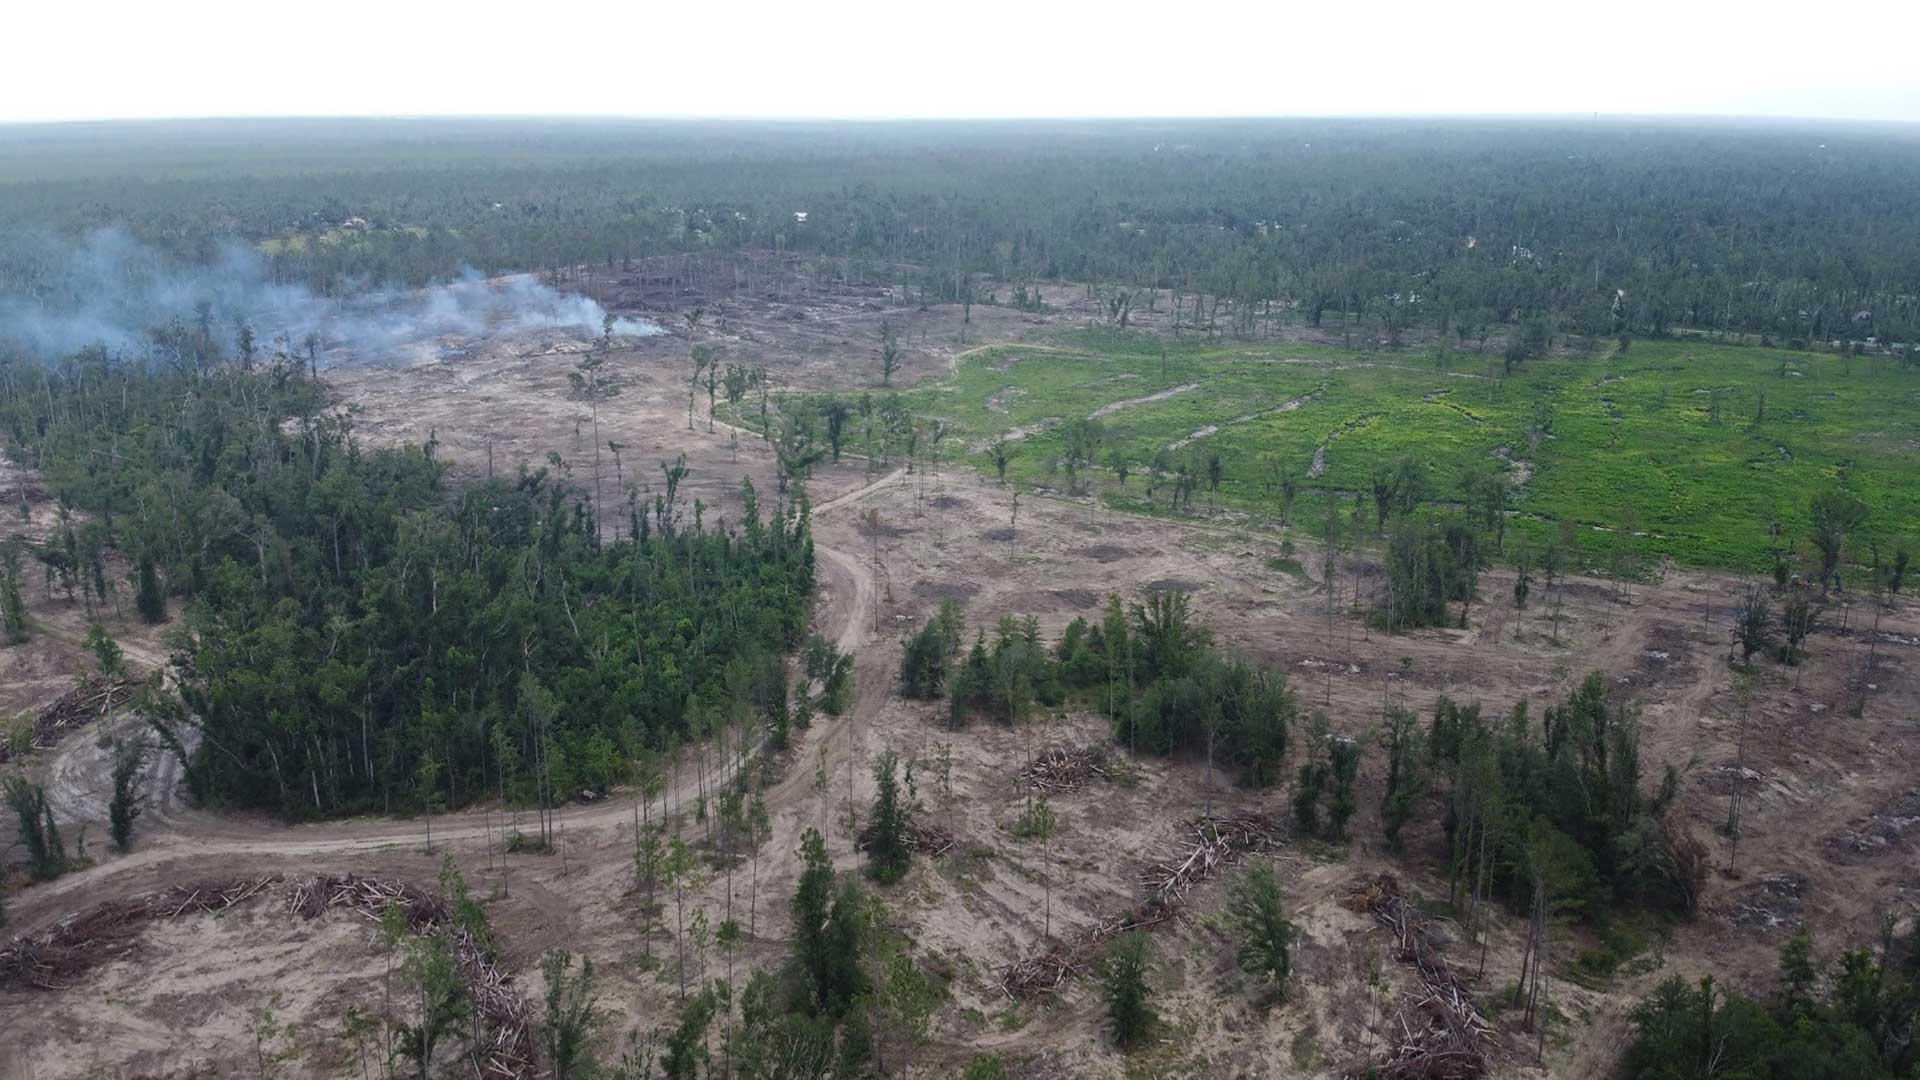 Deforestation of barren land